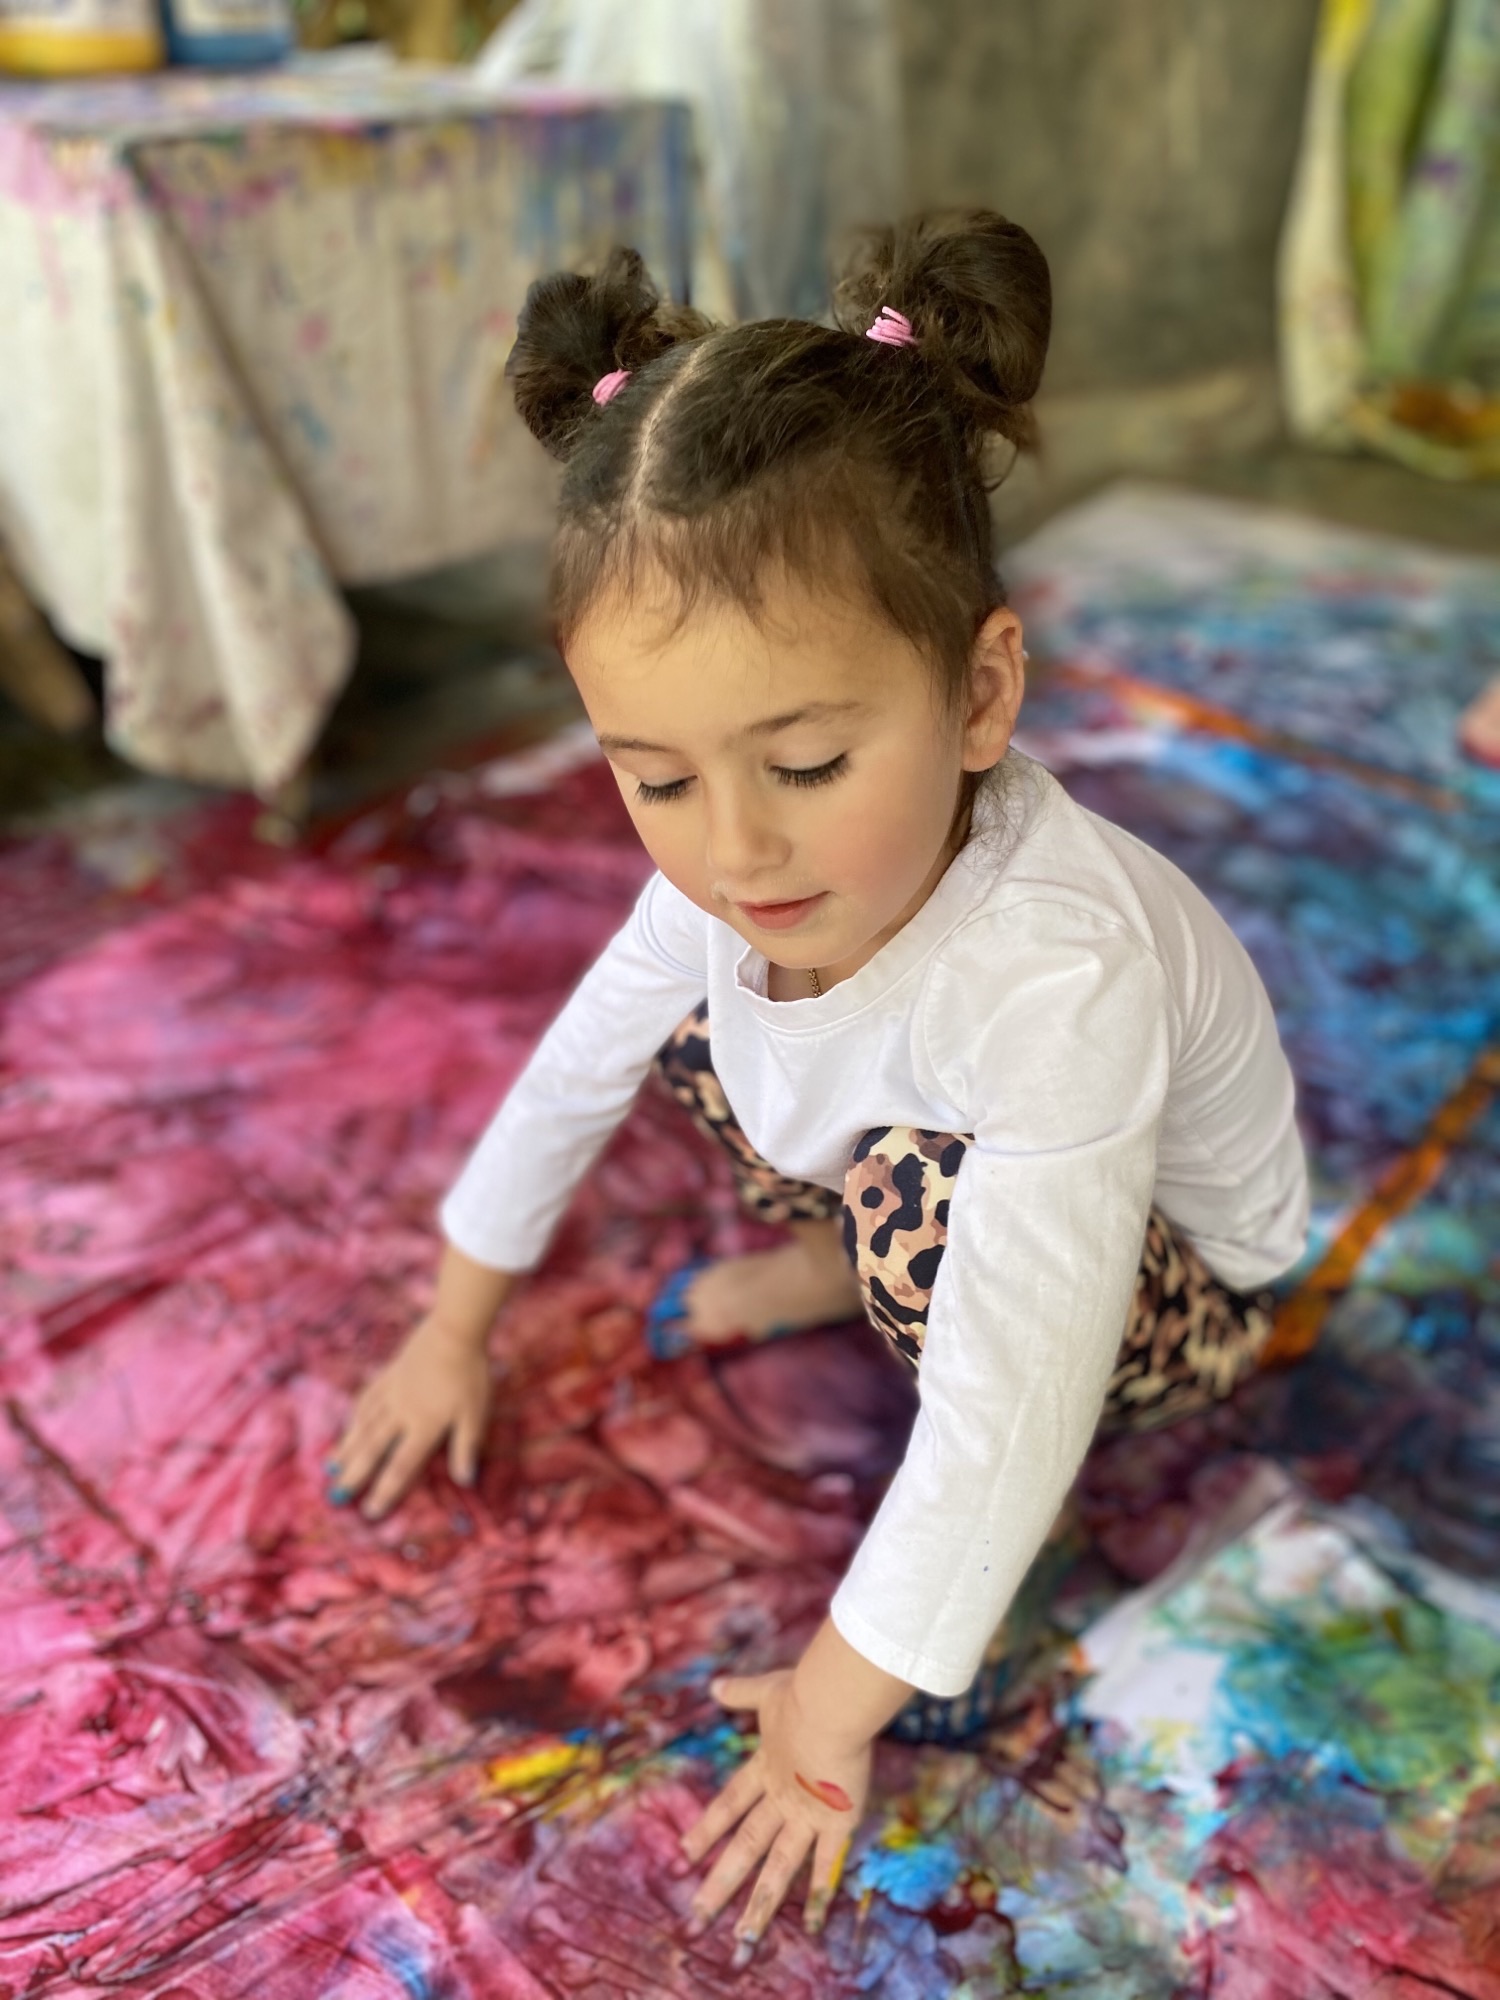 young girl exploring art